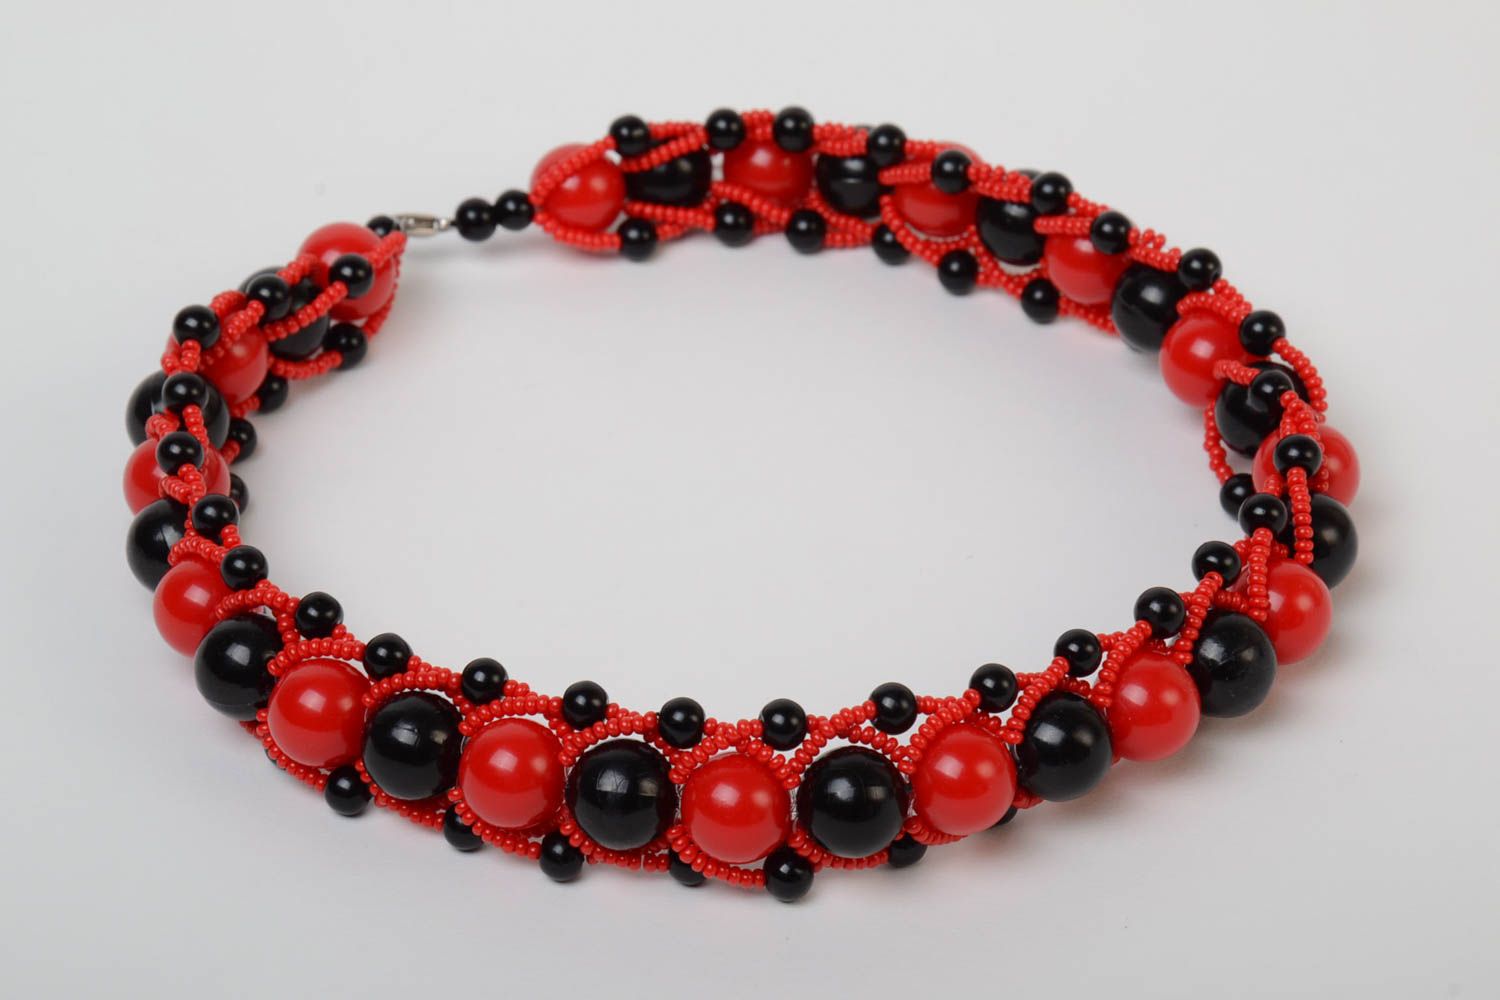 Ожерелье из бусин и бисера красное с черным крупное стильное модное хэнд мейд фото 2